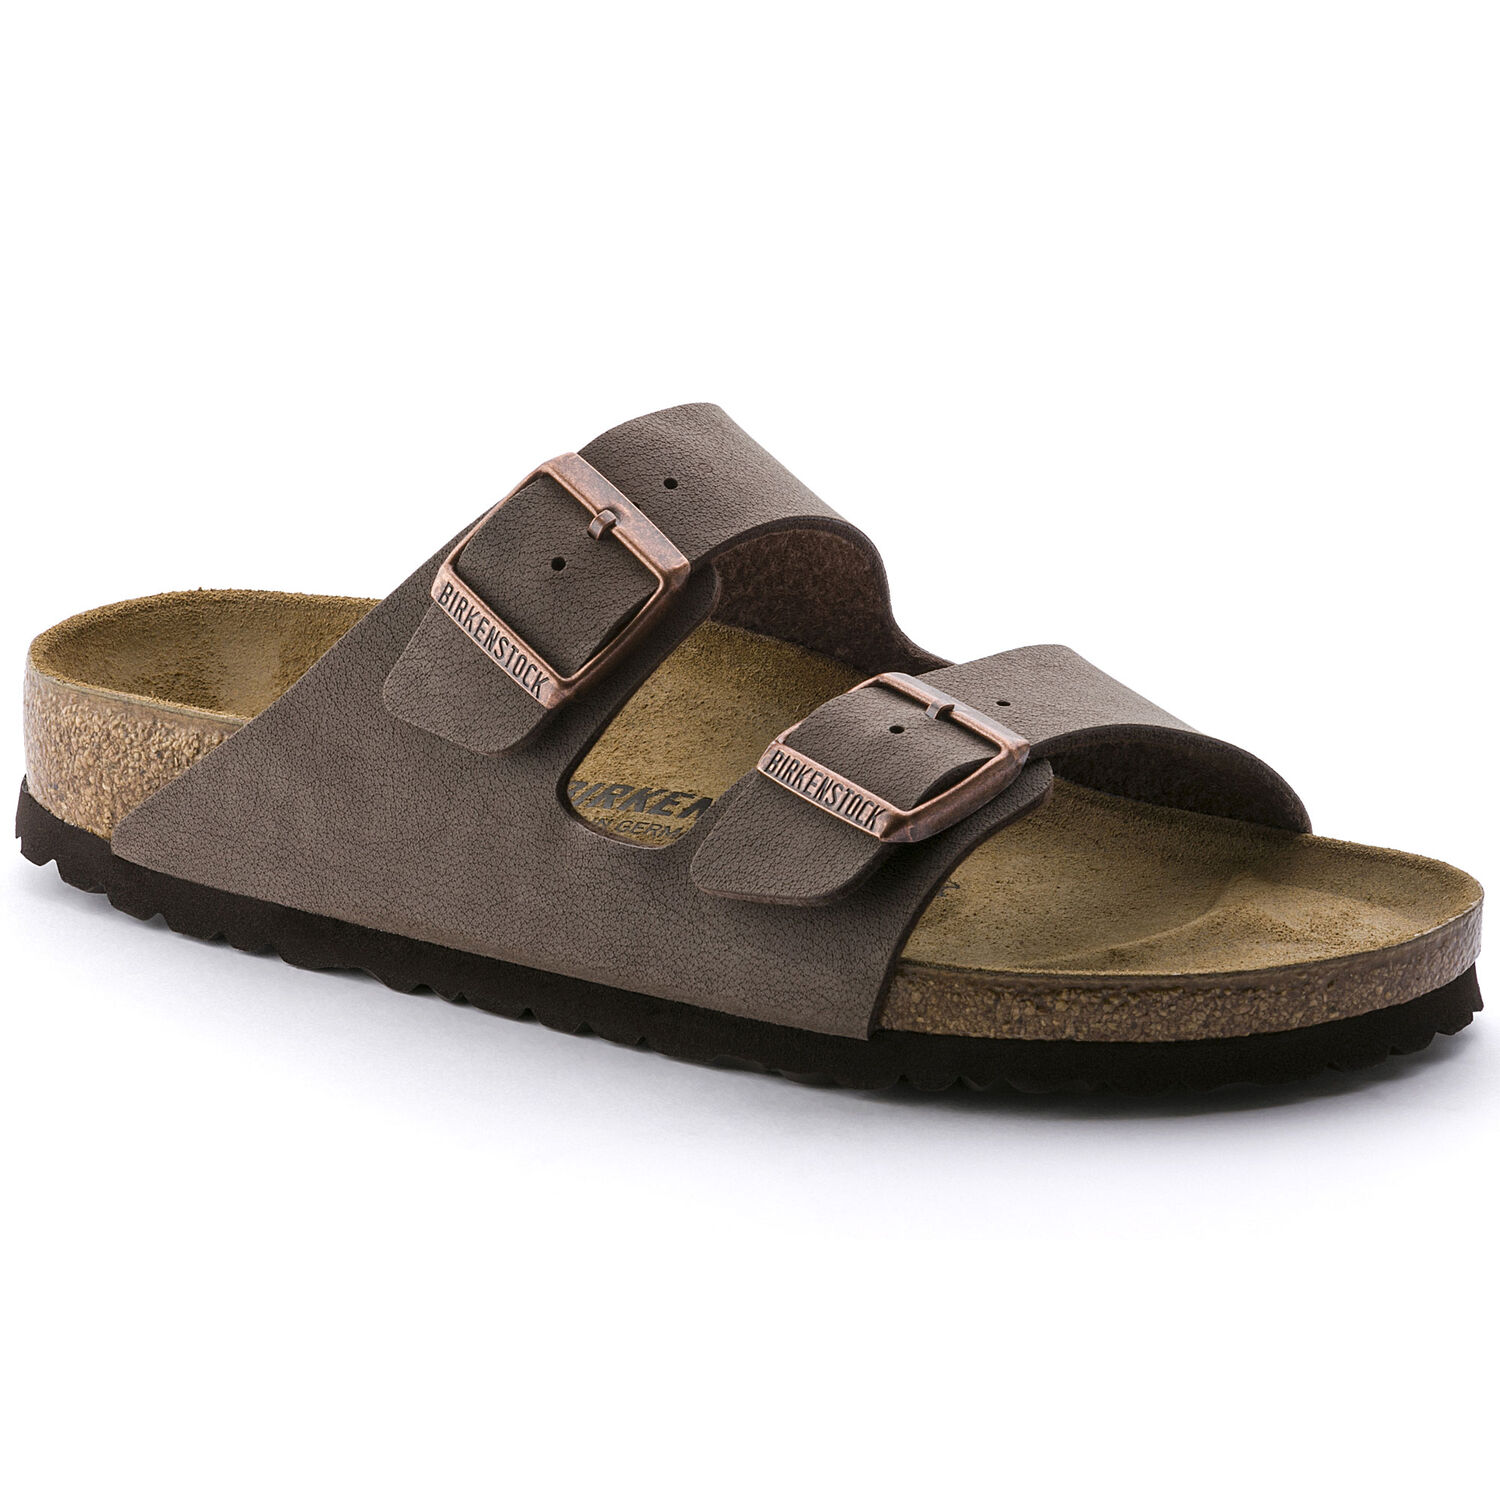 Buy Birkenstock Sandals Online | lazada.sg